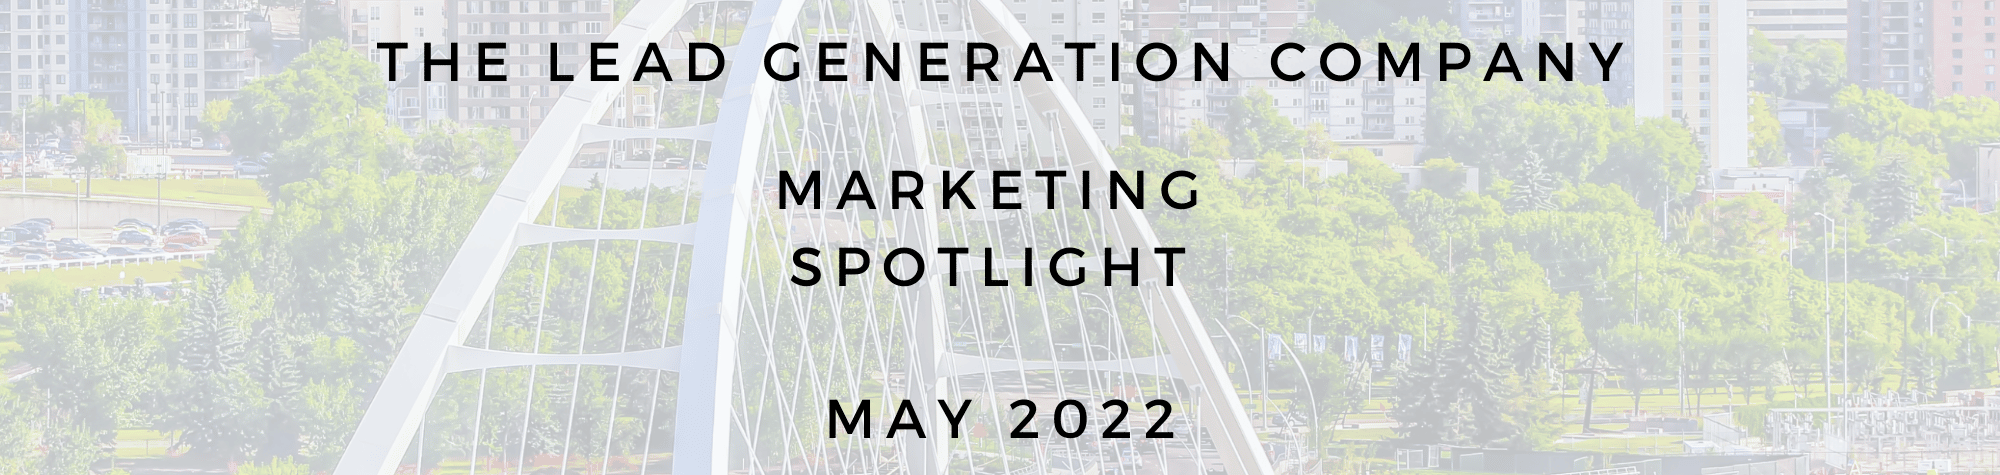 Marketing Spotlight May 2022